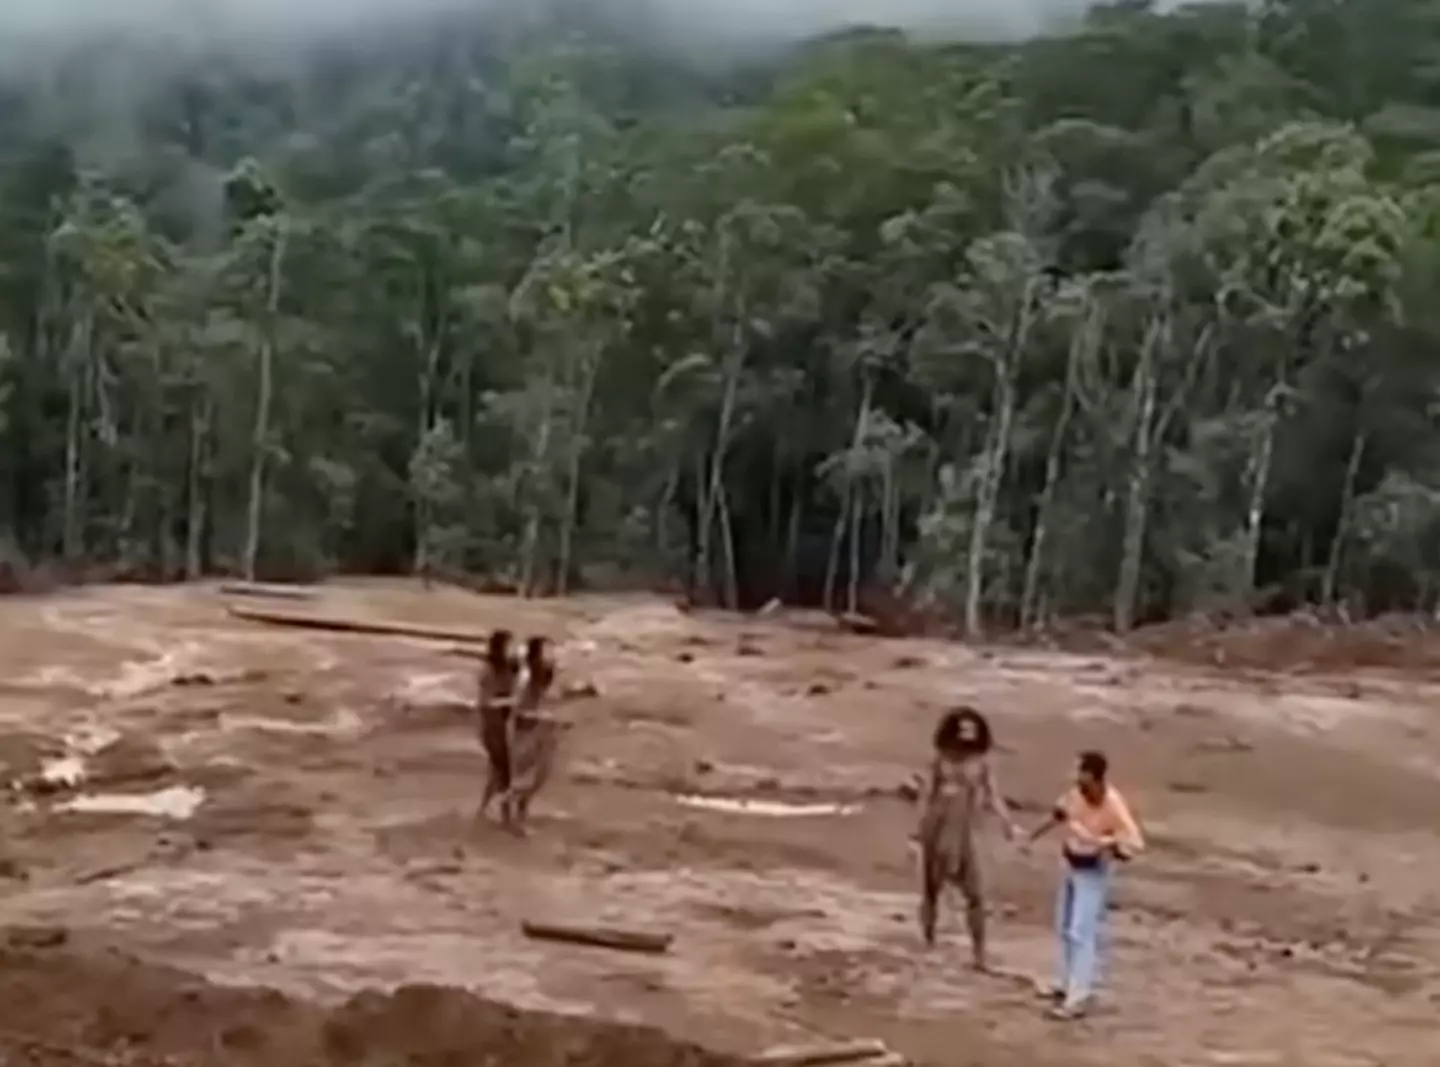 与世隔绝的洪加纳曼亚瓦部落成员为了生存被迫与外界接触 (YouTube/ Survival International) 